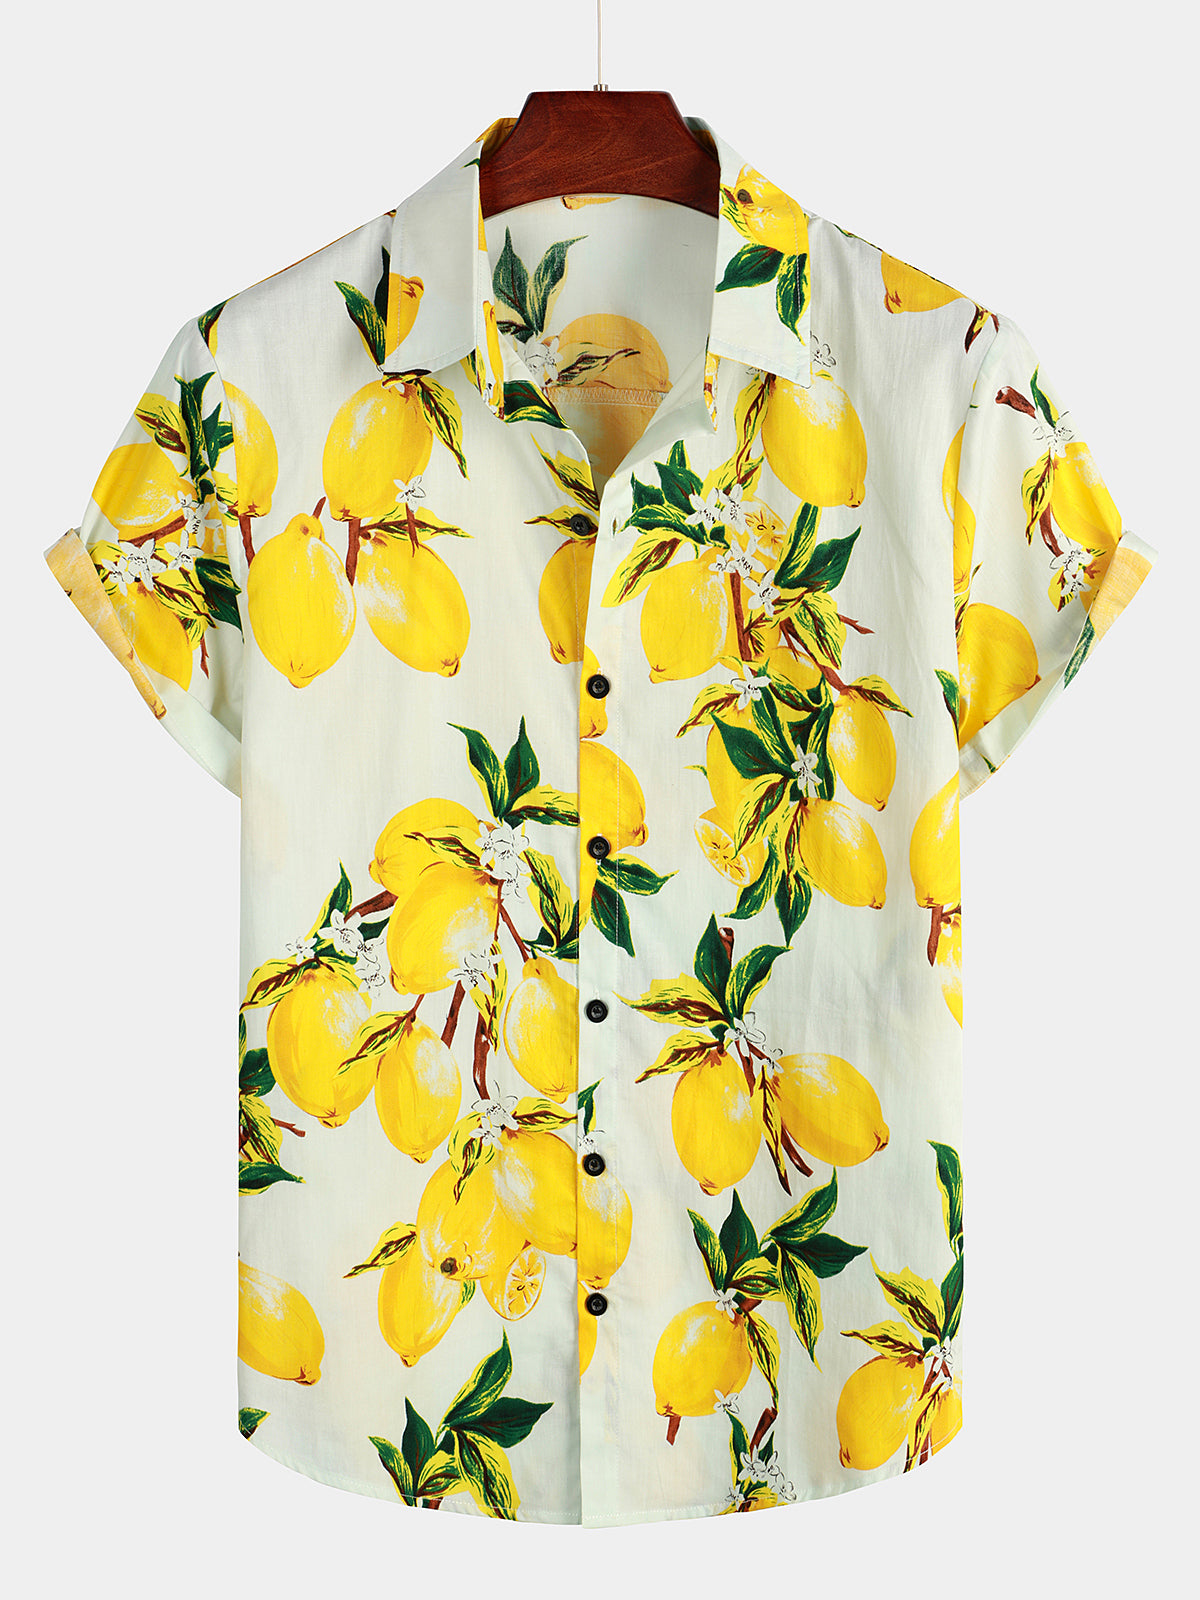 Men's Lemon Print Short Sleeve Button Up Beach Summer Hawaiian Shirt